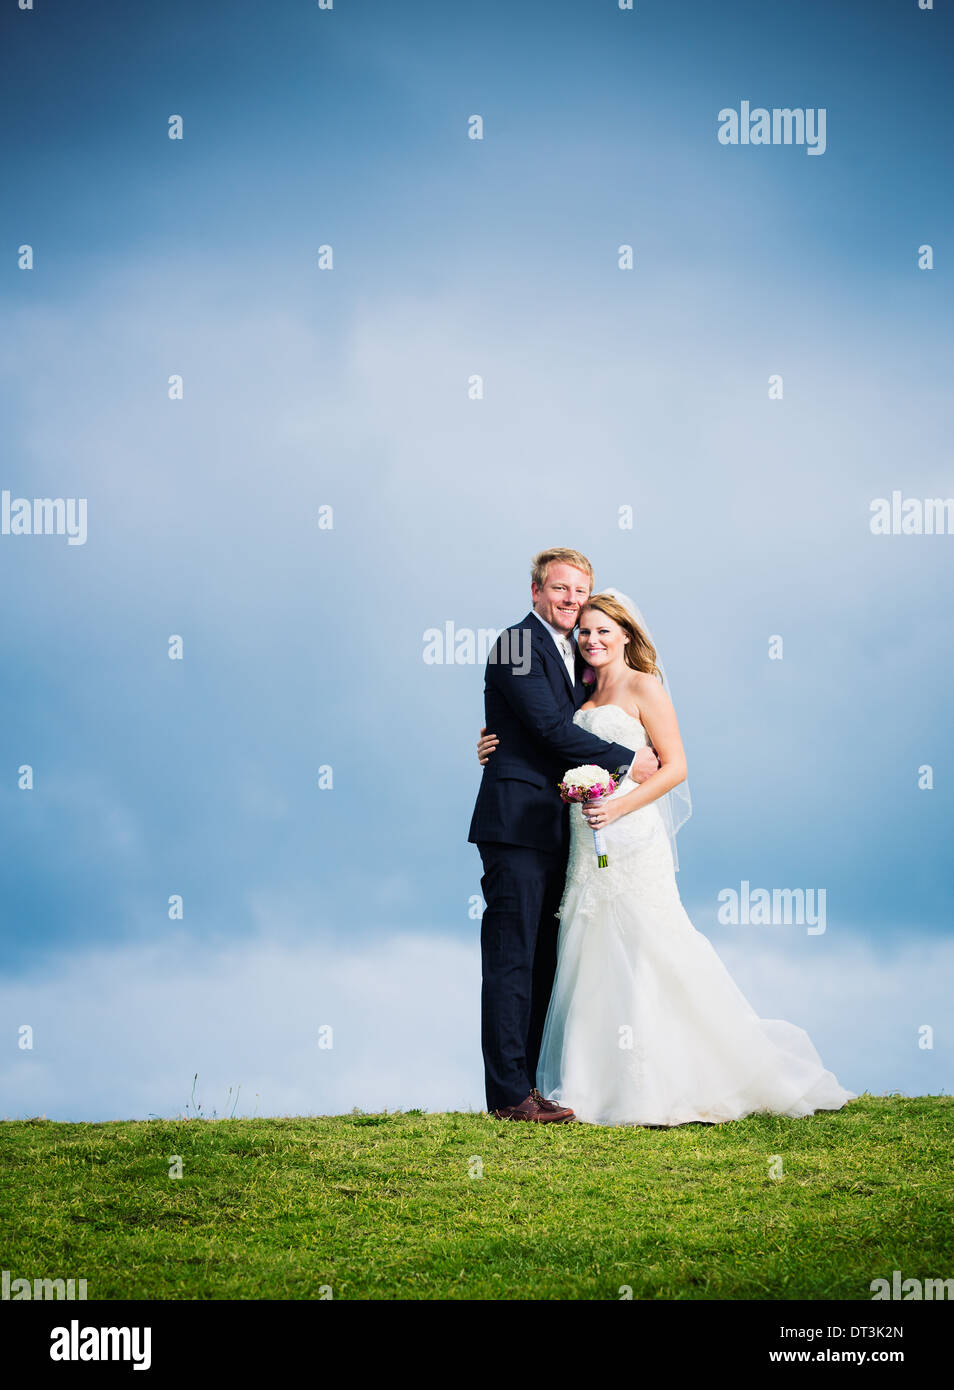 Hochzeit paar, glücklich romantische Braut und Bräutigam in Liebe umarmen Stockfoto